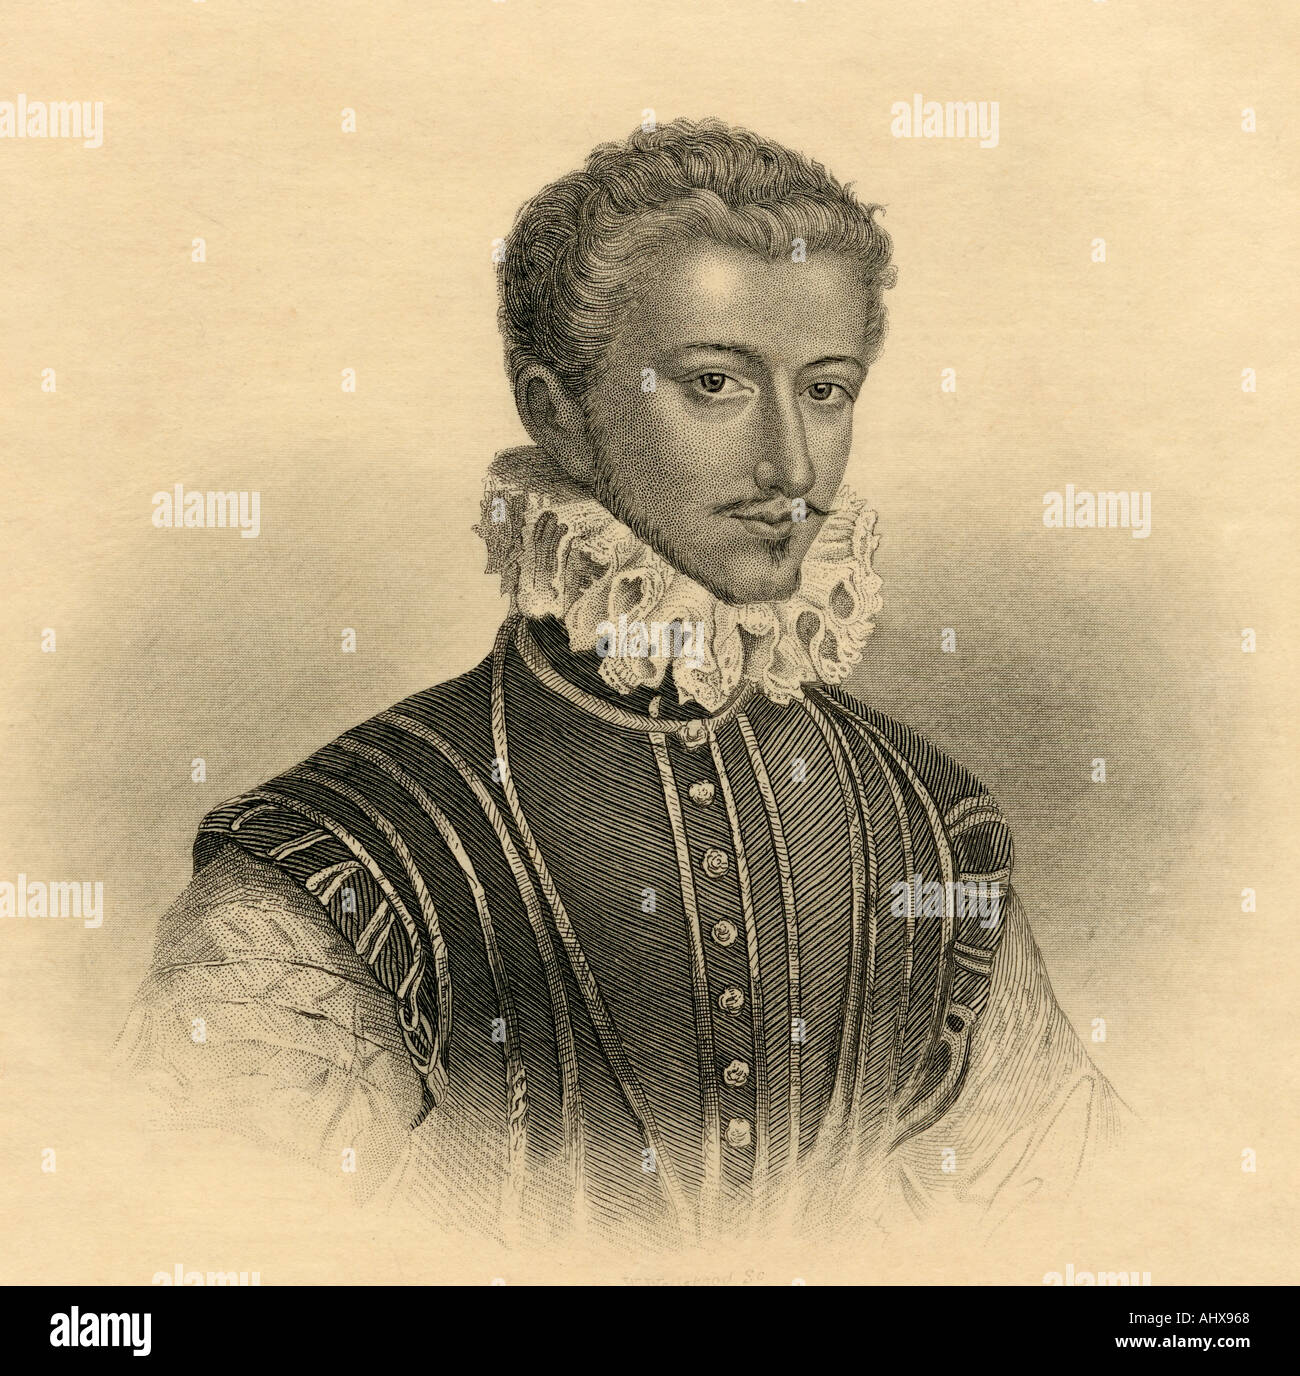 Heinrich I., Prinz von Joinville, Herzog von Guise, Graf von Eu, 1550 - 1588. Französische Politiker, Soldaten und Führer der Römisch-katholischen Partei. Stockfoto